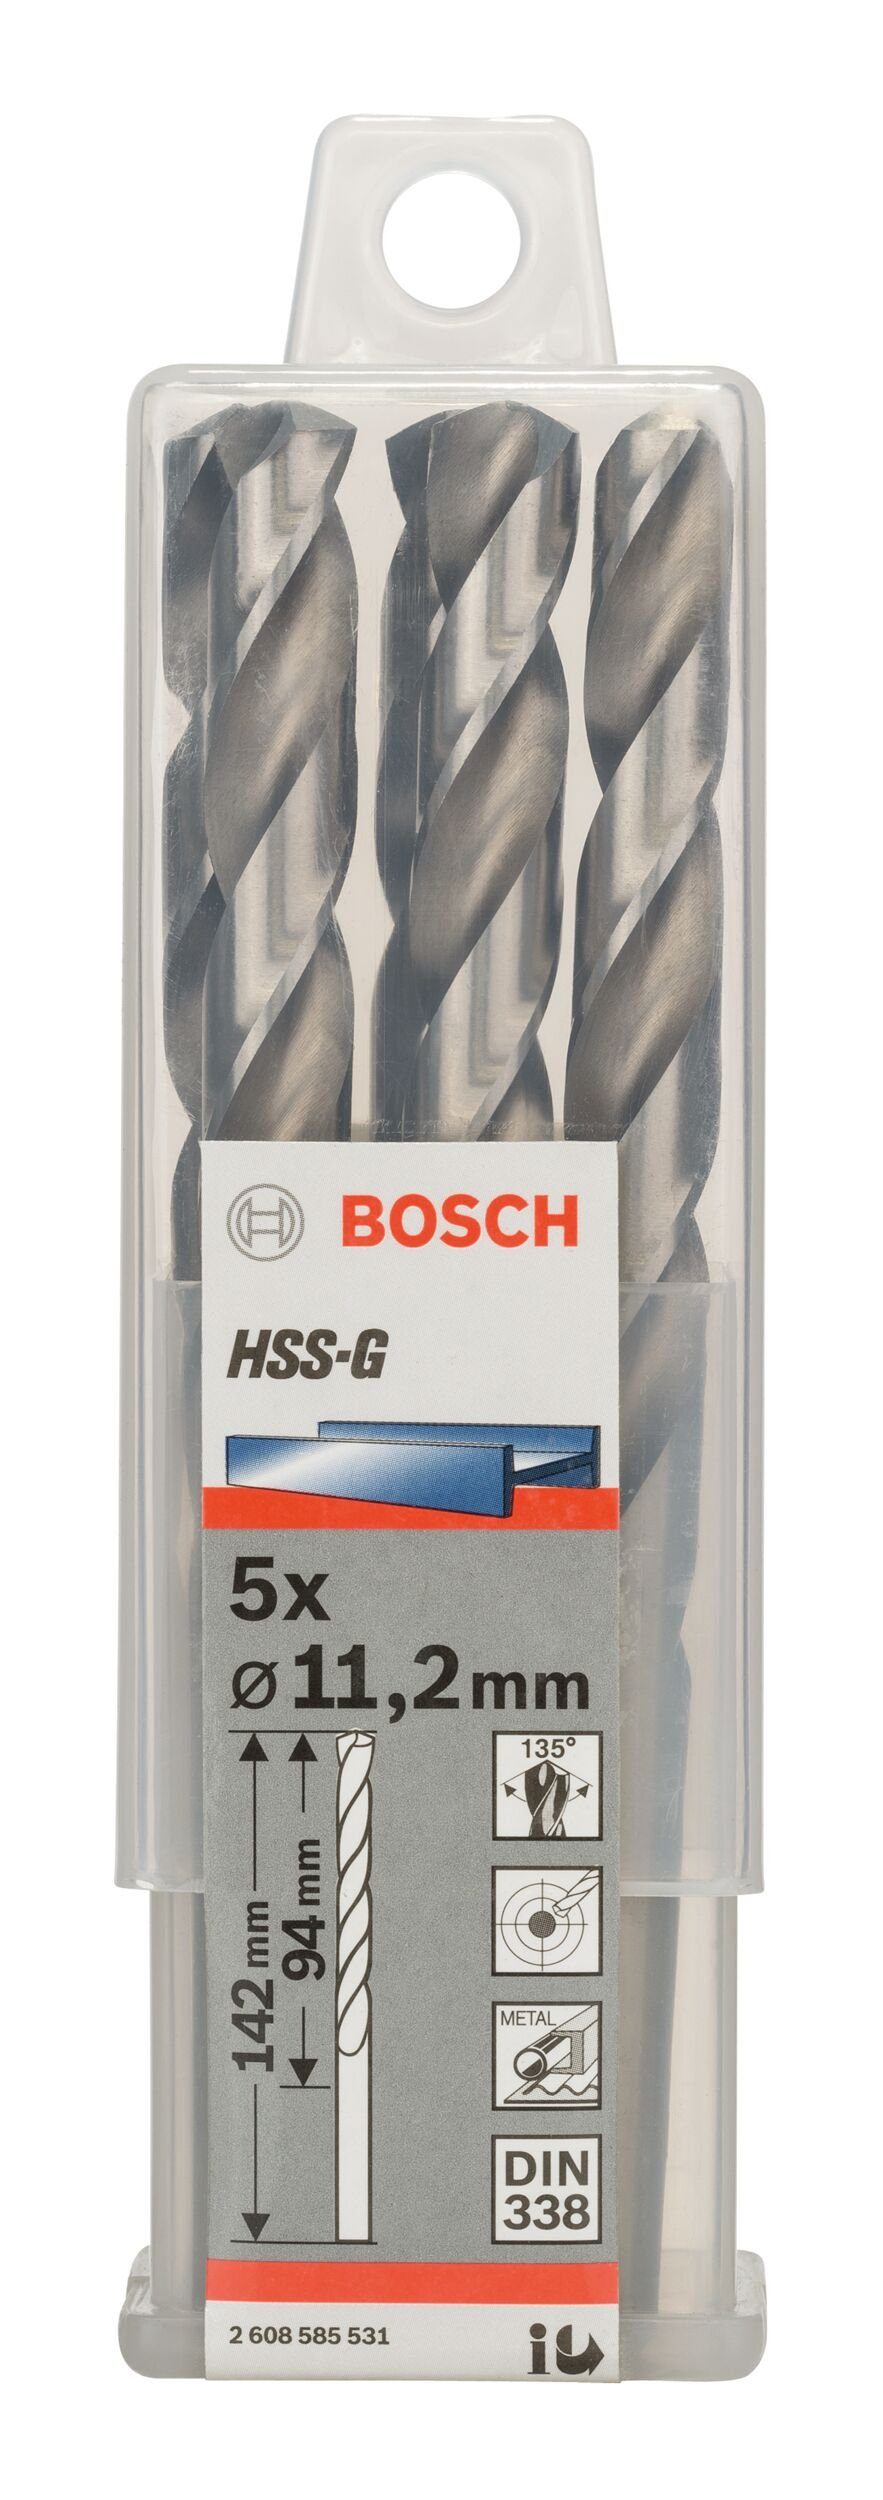 Stück), 338) (DIN 94 mm 5er-Pack - BOSCH (5 Metallbohrer, x 11,2 x - HSS-G 142